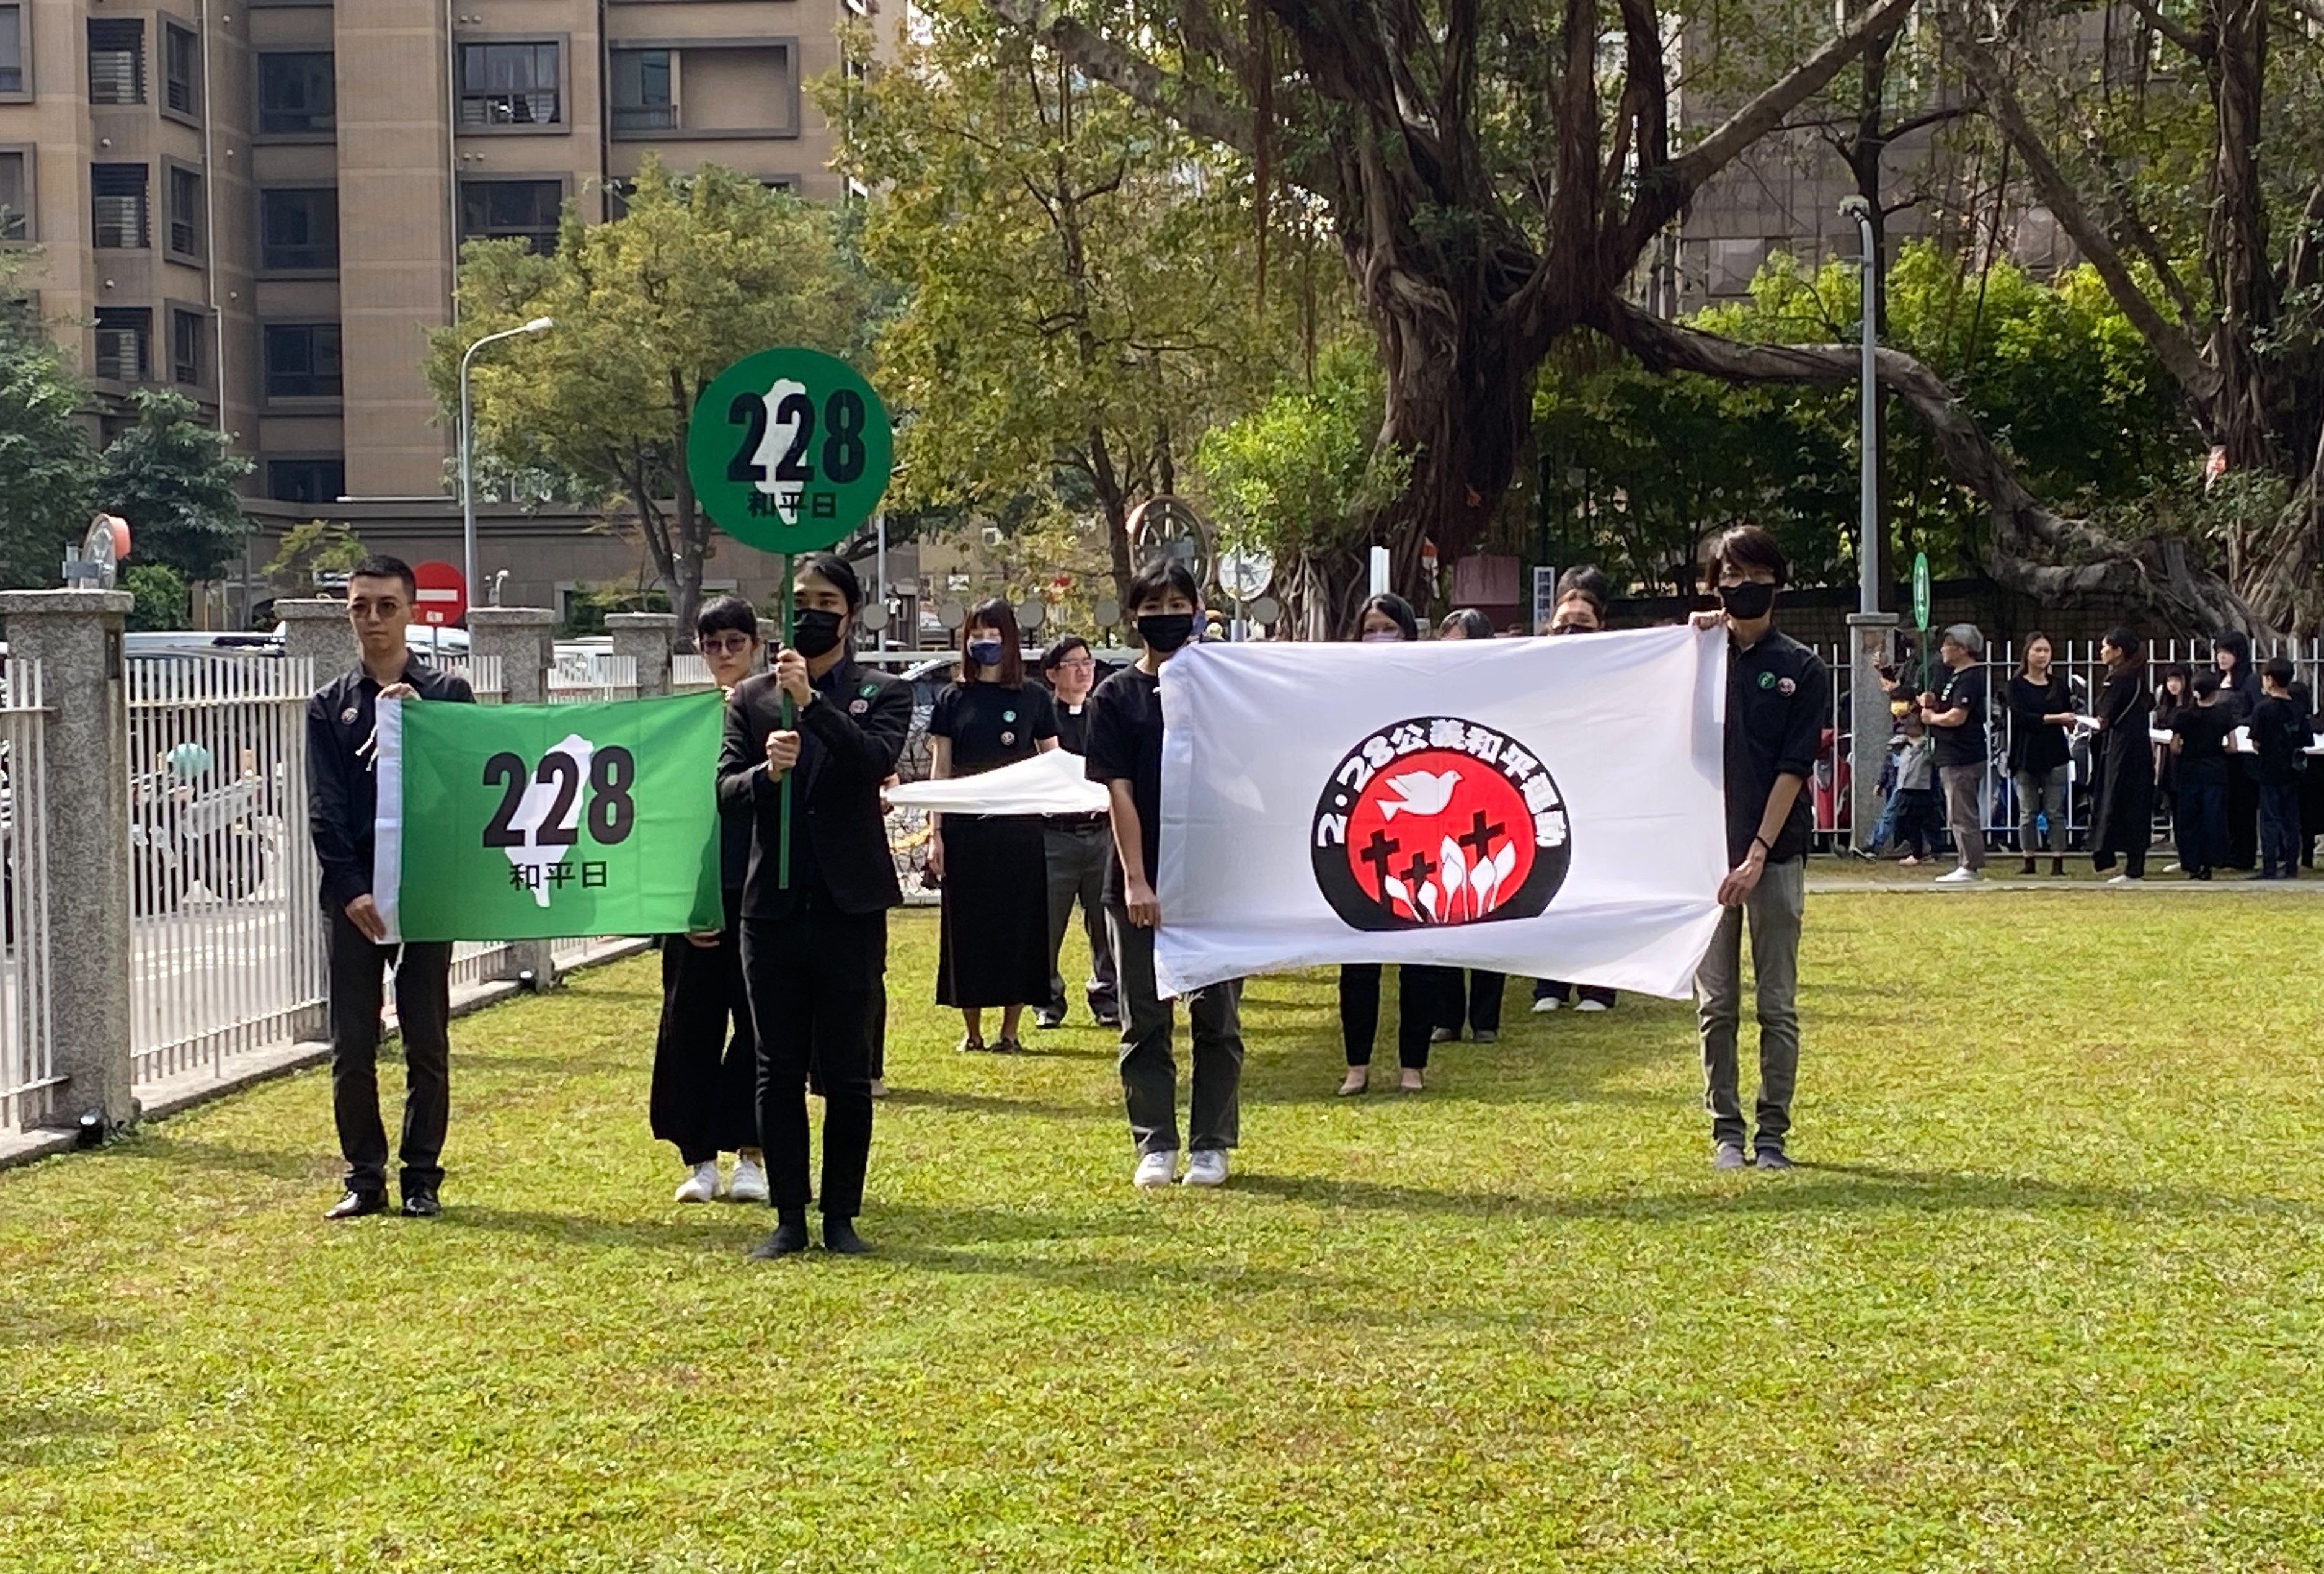 2/24舉辦228事件77週年遊行 籲國會三黨應積極落實轉型正義